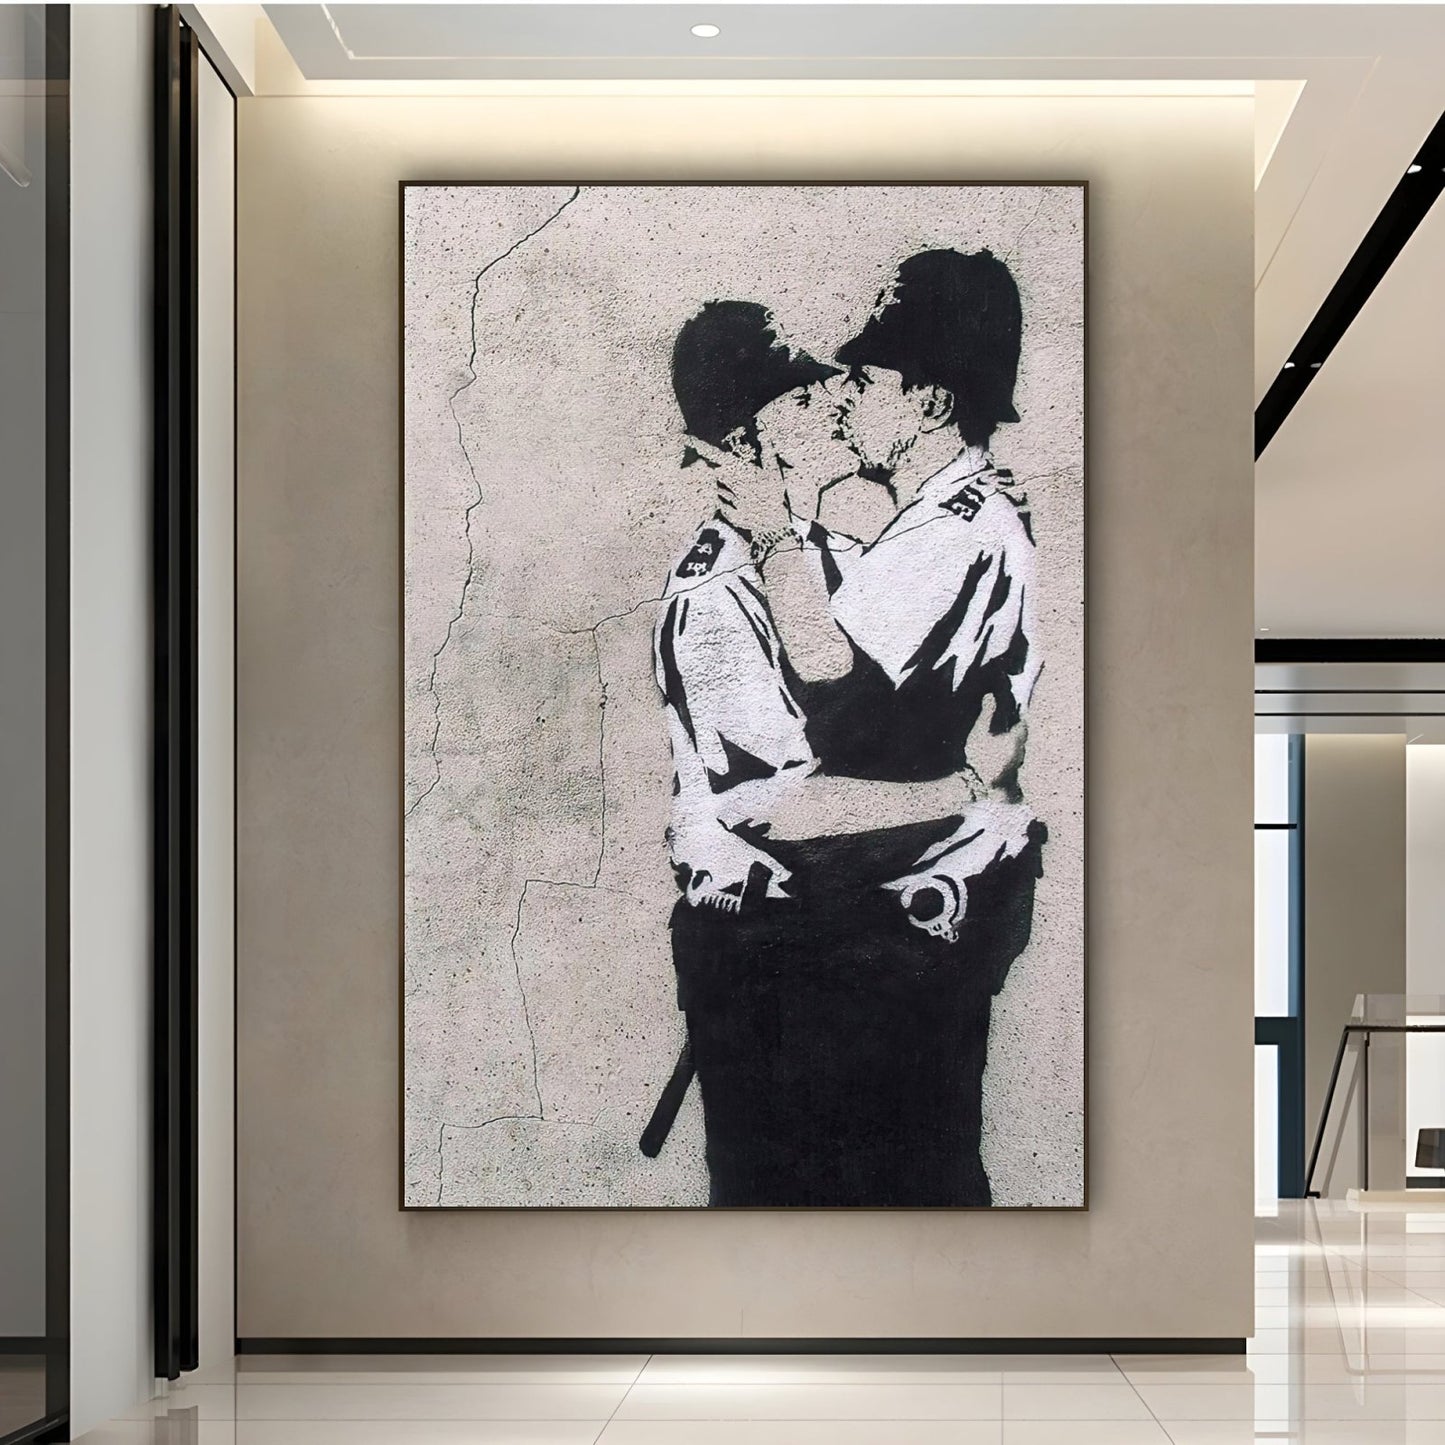 Całowanie Coppersa, Banksy